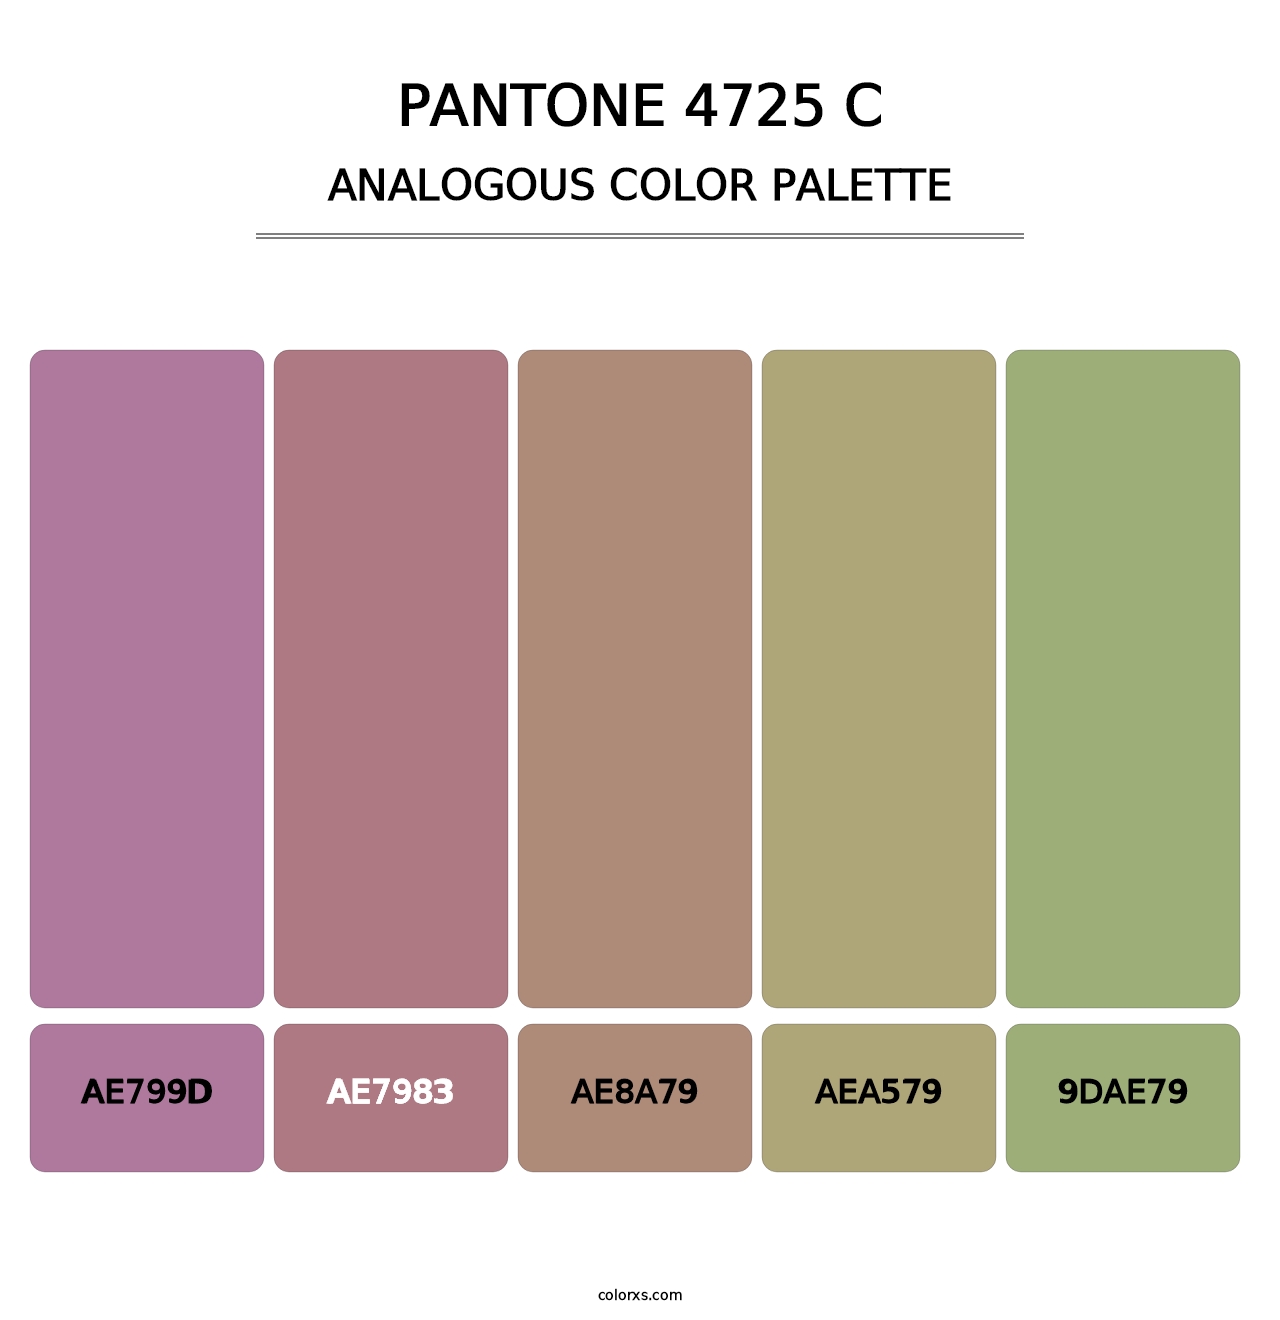 PANTONE 4725 C - Analogous Color Palette